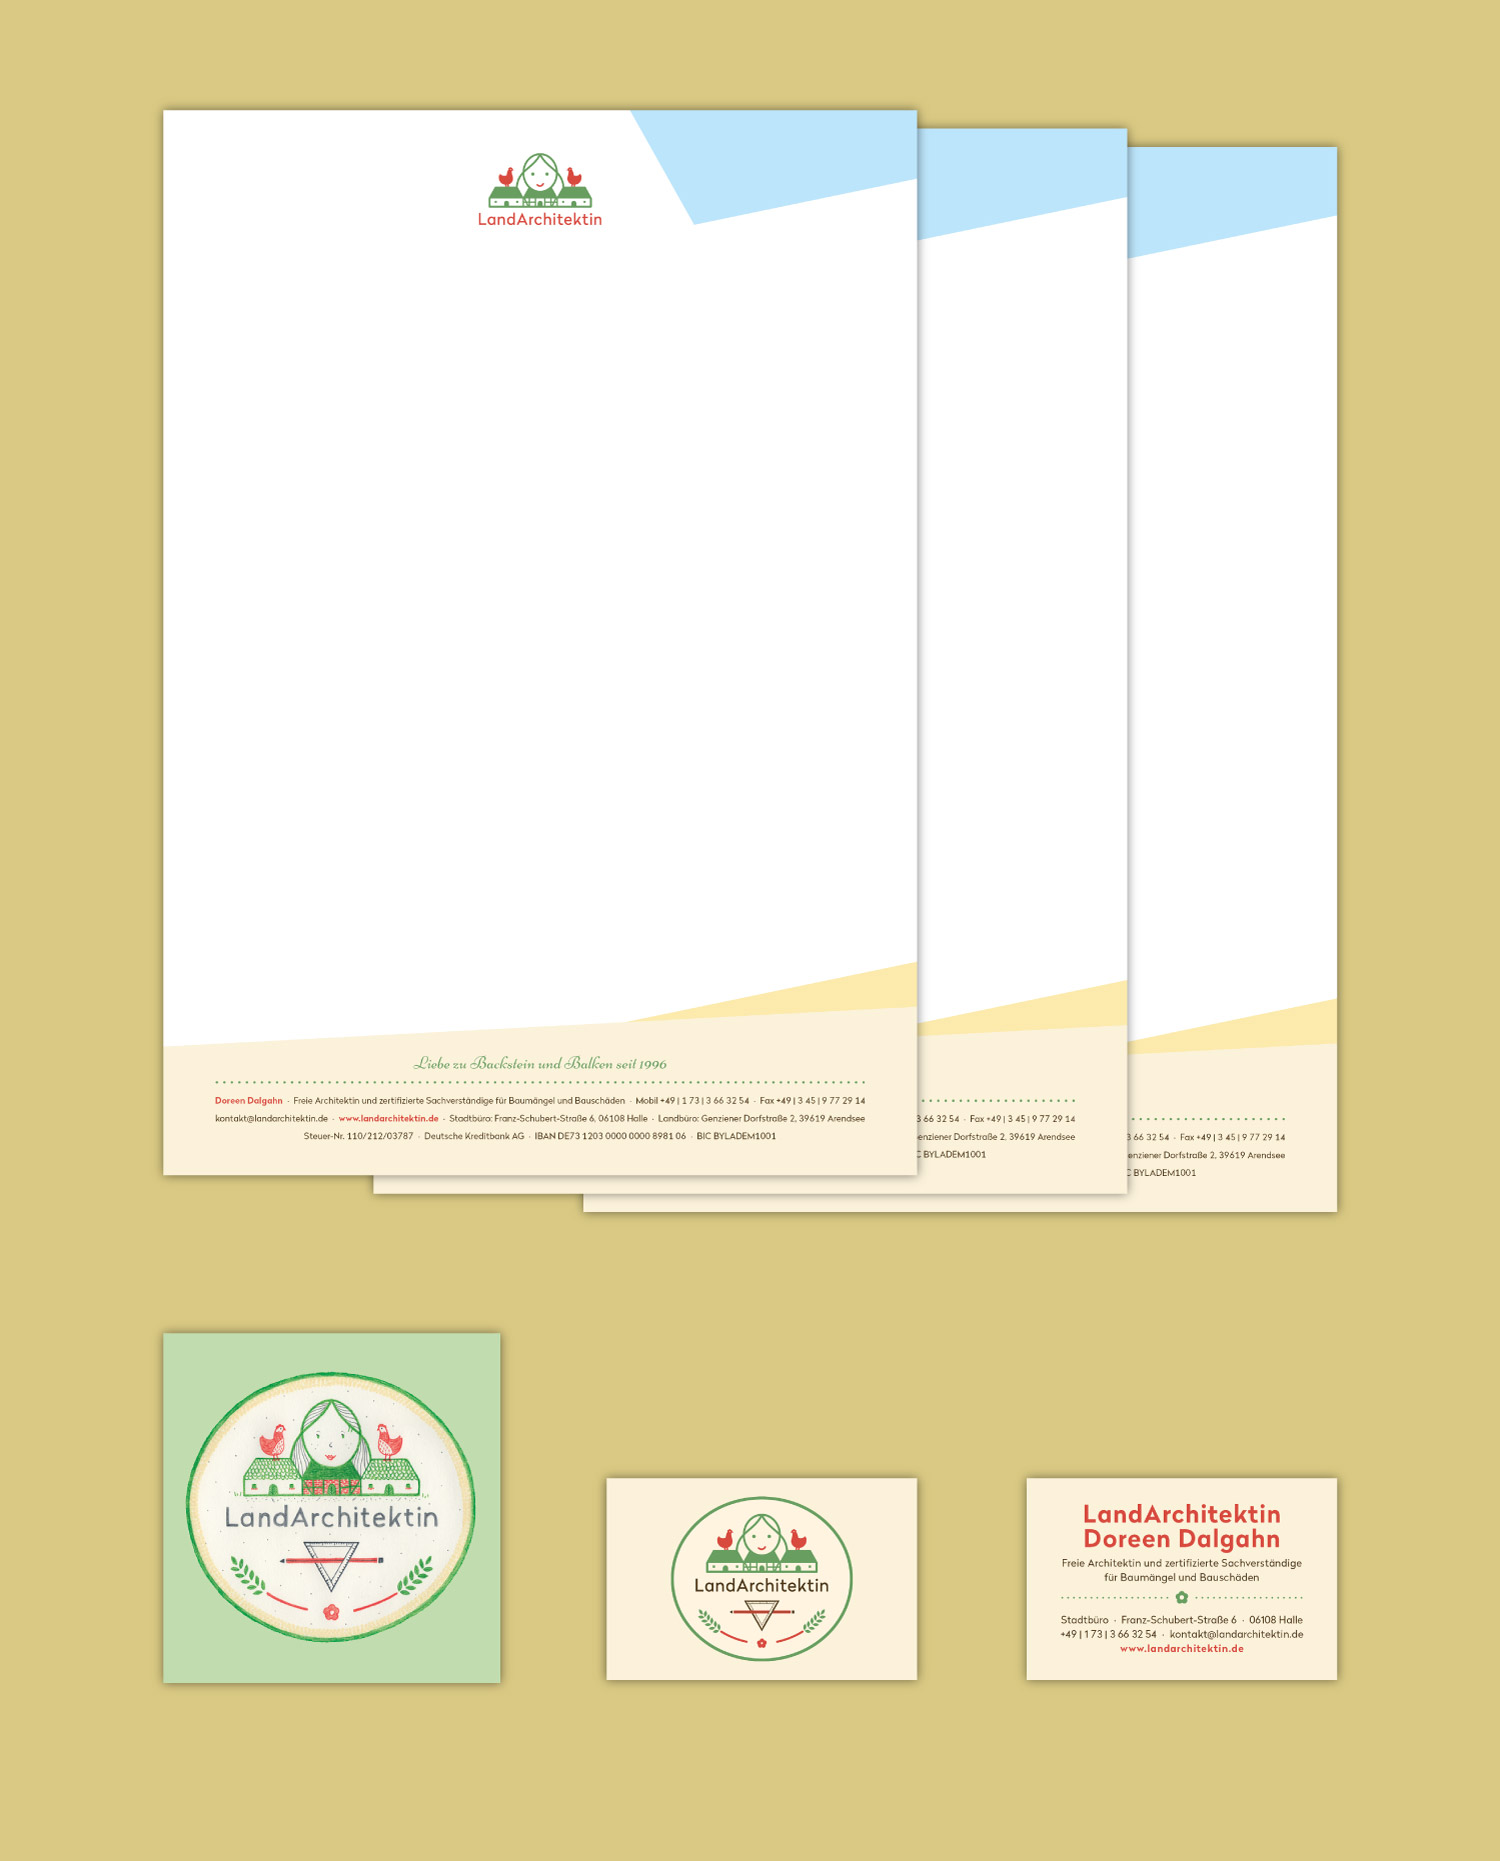 Geschäftsausstattung LandArchitektin: Briefpapier und Visitenkarte mit einheitlicher Farb- und Schriftfestlegung